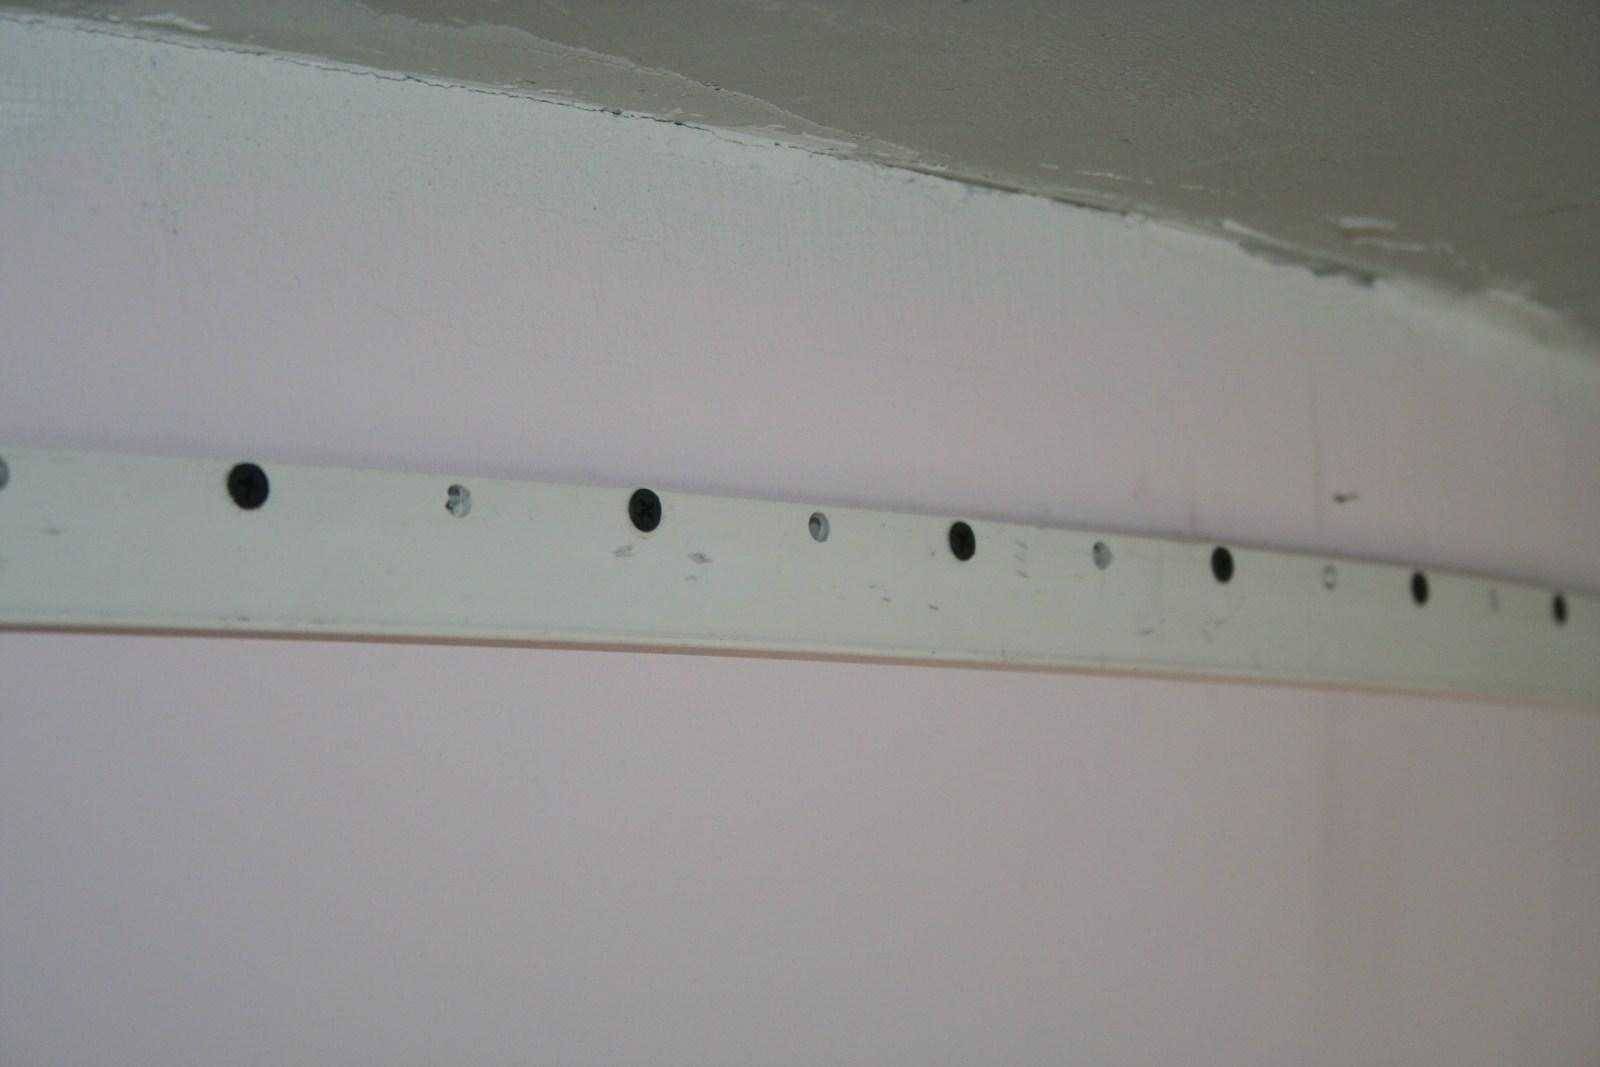 Крепление натяжного потолка к гипсокартону: как крепится натяжной потолок на гипсокартонные стены, монтаж закладных для короба, как крепятся багеты, стык планки, установка